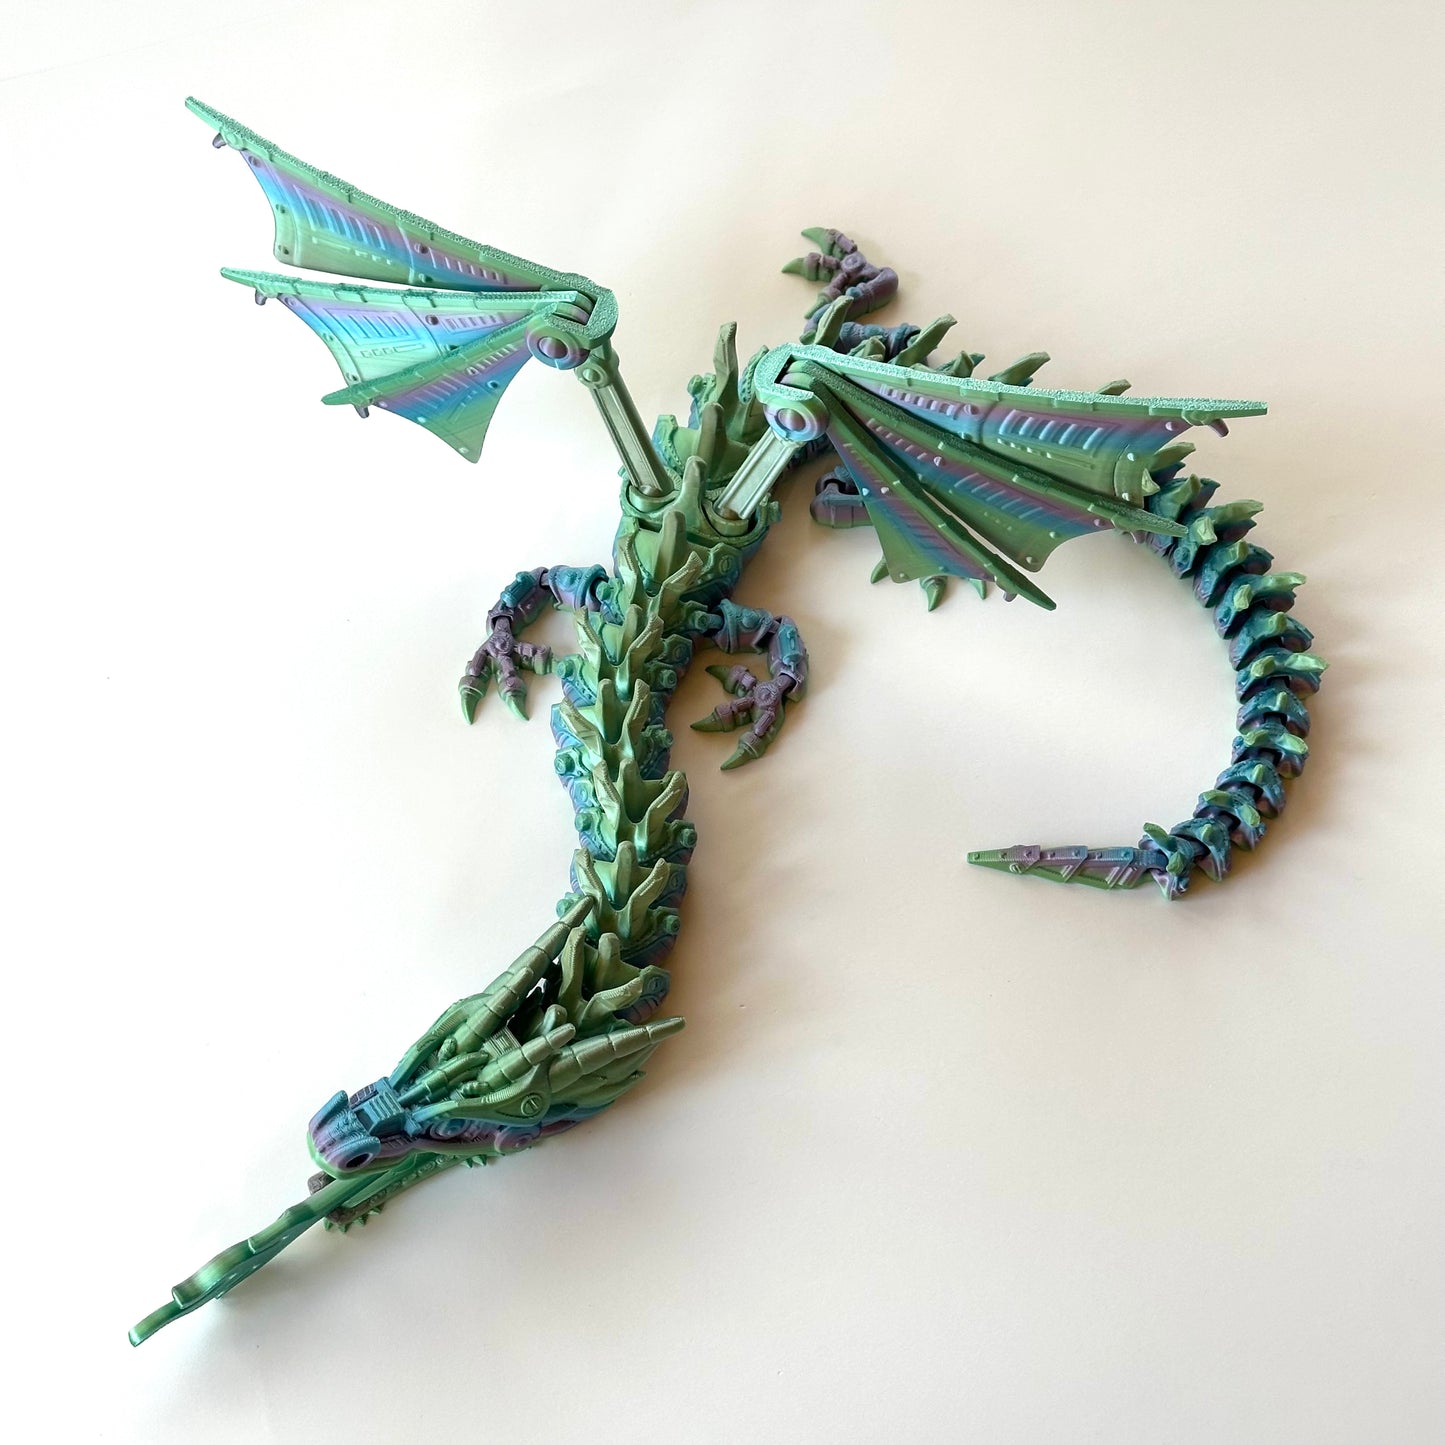 Flexi Mech Dragon - 3D Printed Articulating Figure